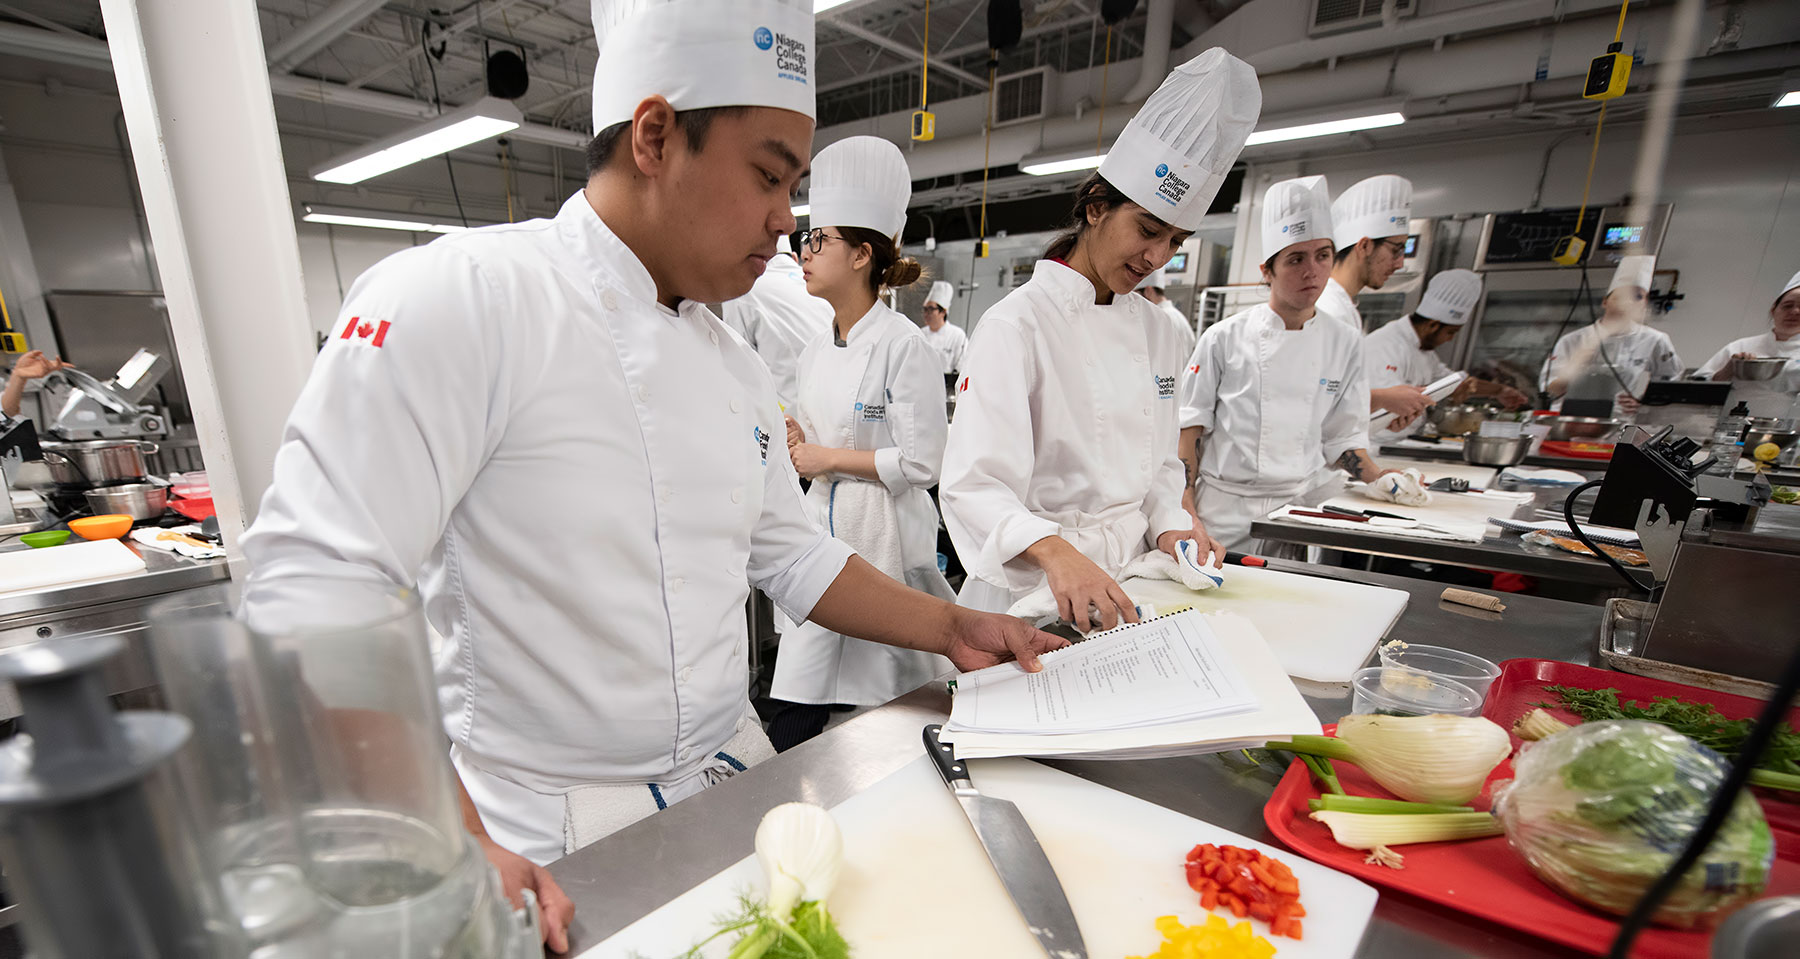 Chương trình học lý thuyết song song với thực hành của sinh viên ngành bếp tại Vancouver Community College